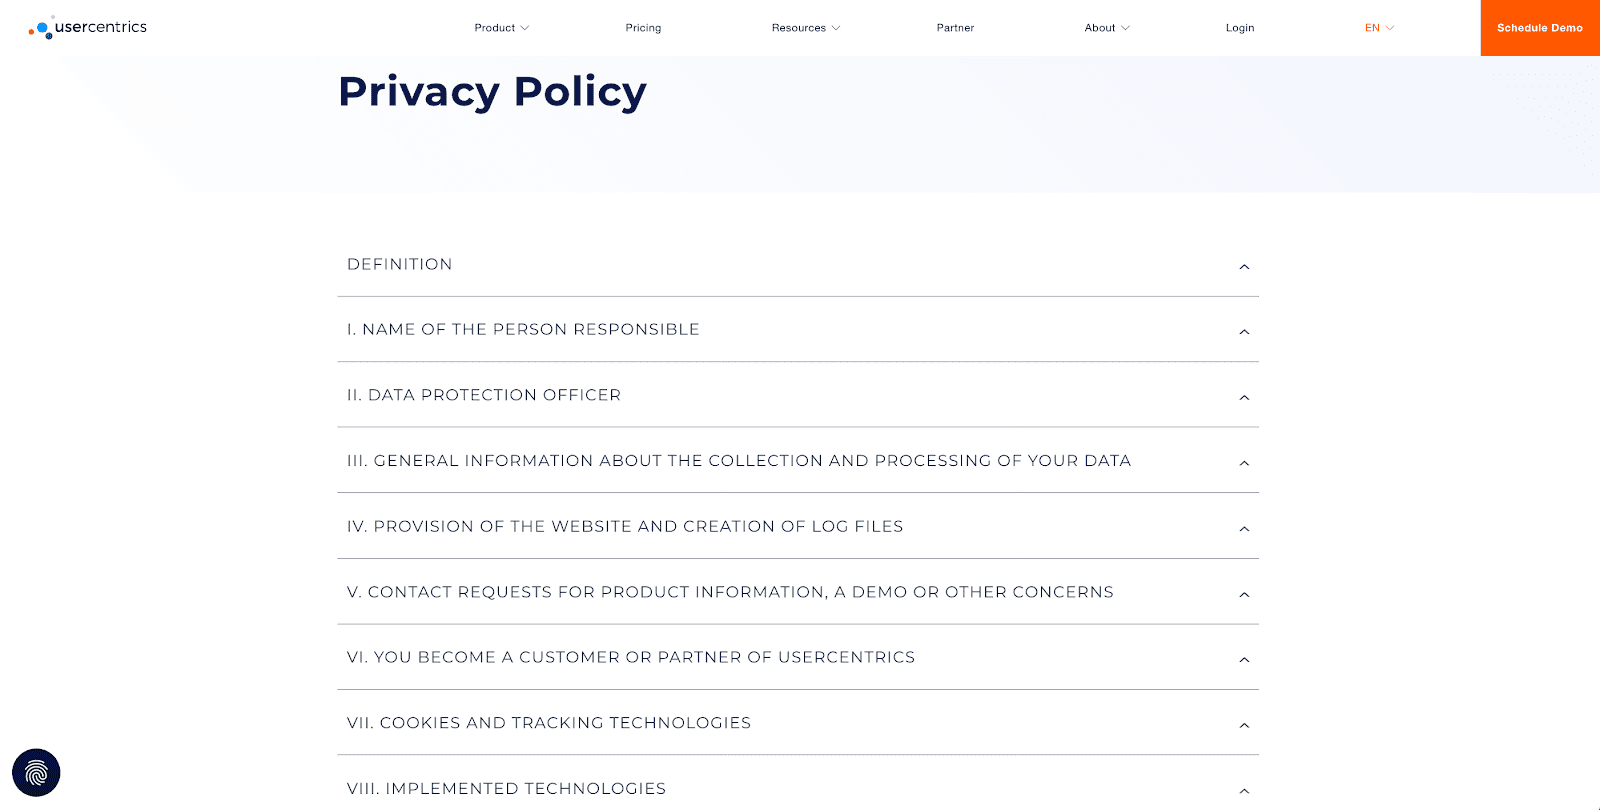 Usercentrics Privacy Policy